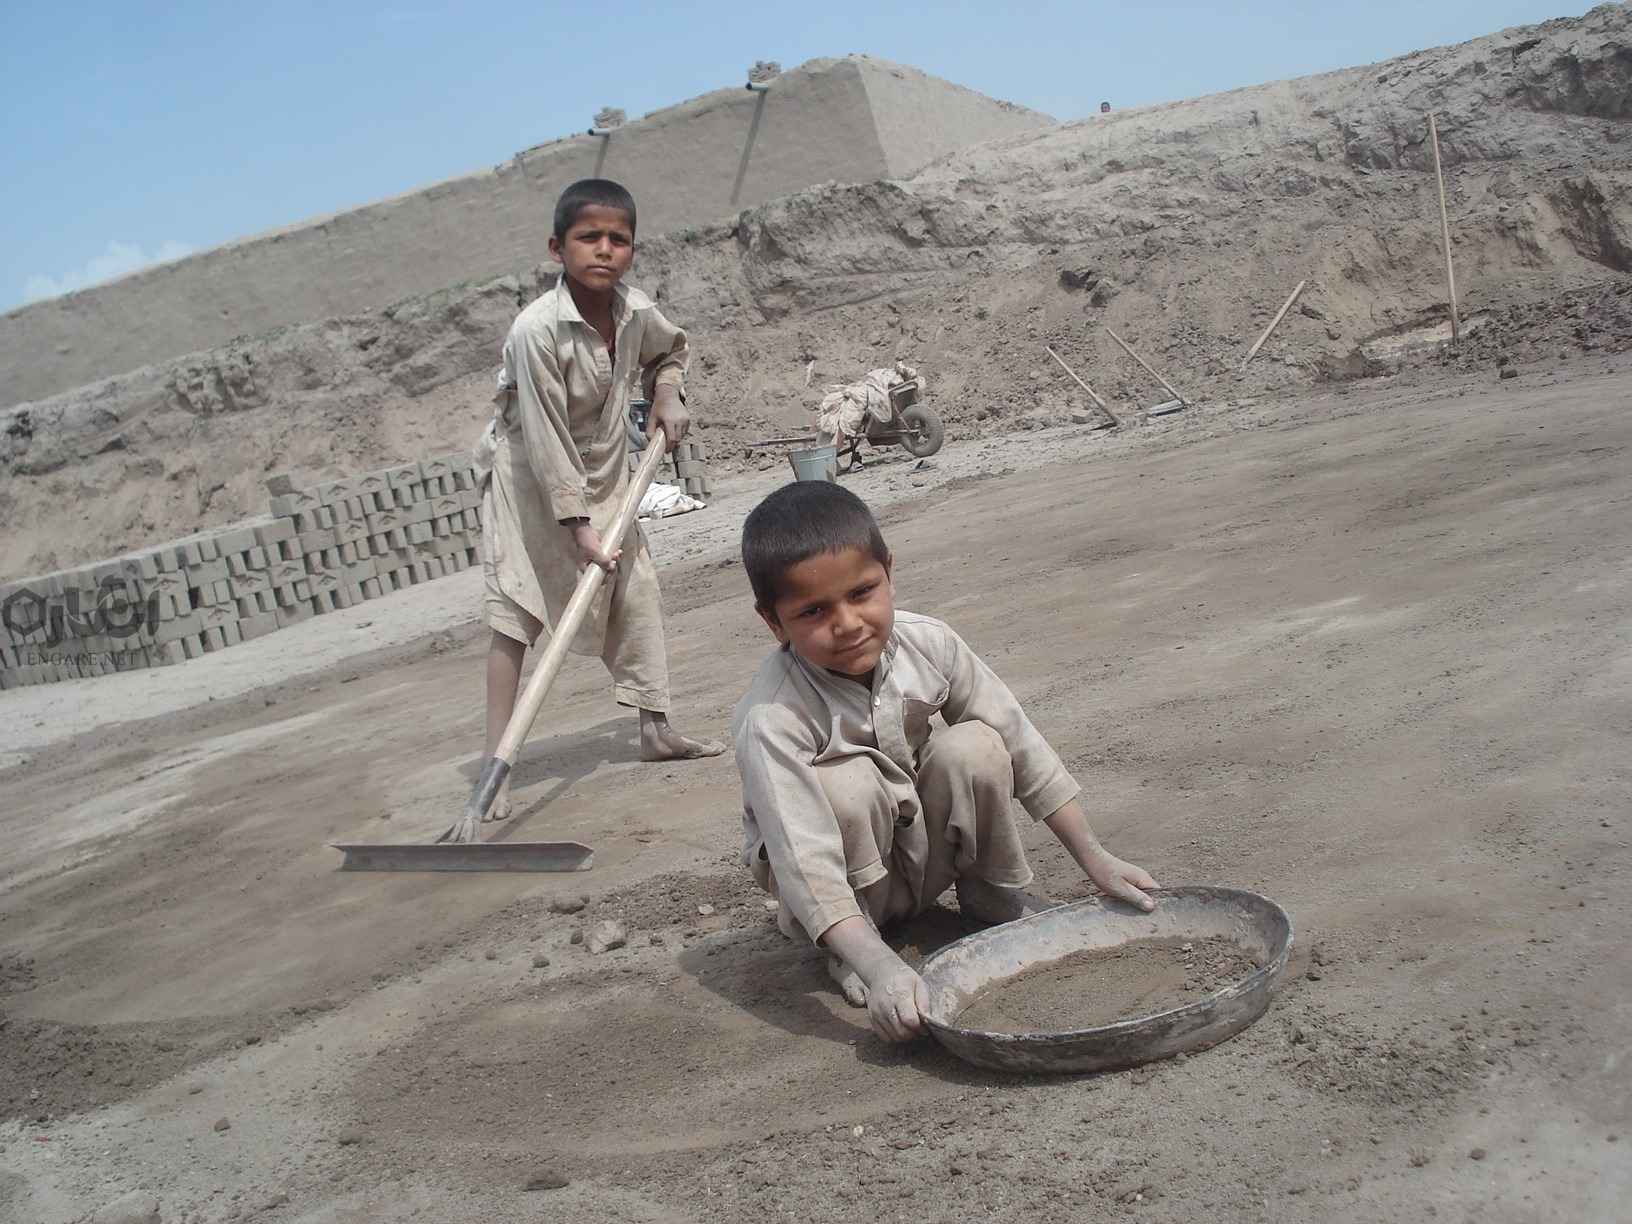 200804089 - کار کودکان را متوقف کنید (گالری عکس) - کودکان کار, کودکان خیابانی, کار کودکان, حقوق کودک, stop child labour